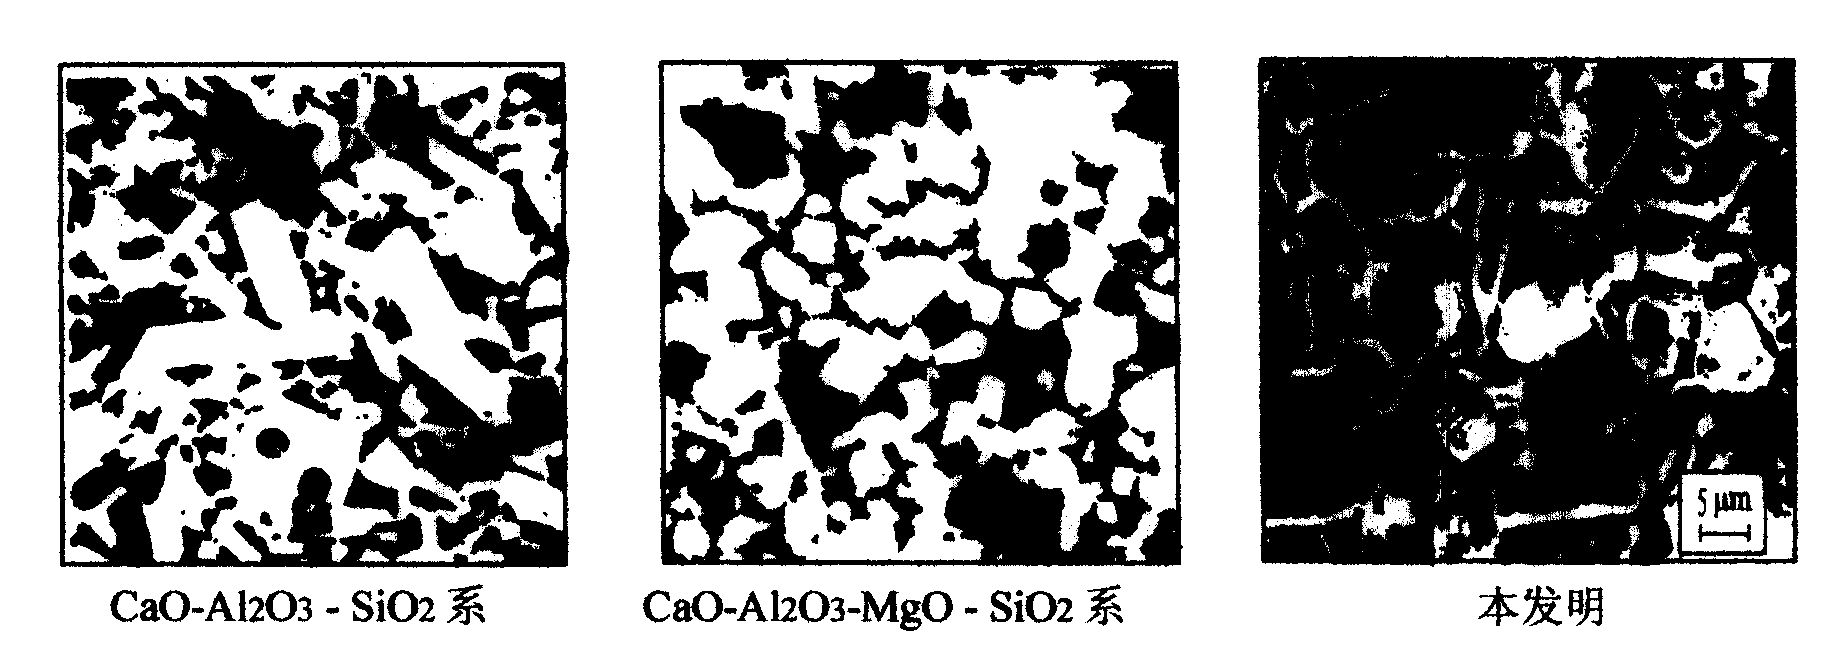 CaO-Al2O3-MgO-ZrO2-SiO2 series aluminum oxide electronic ceramics